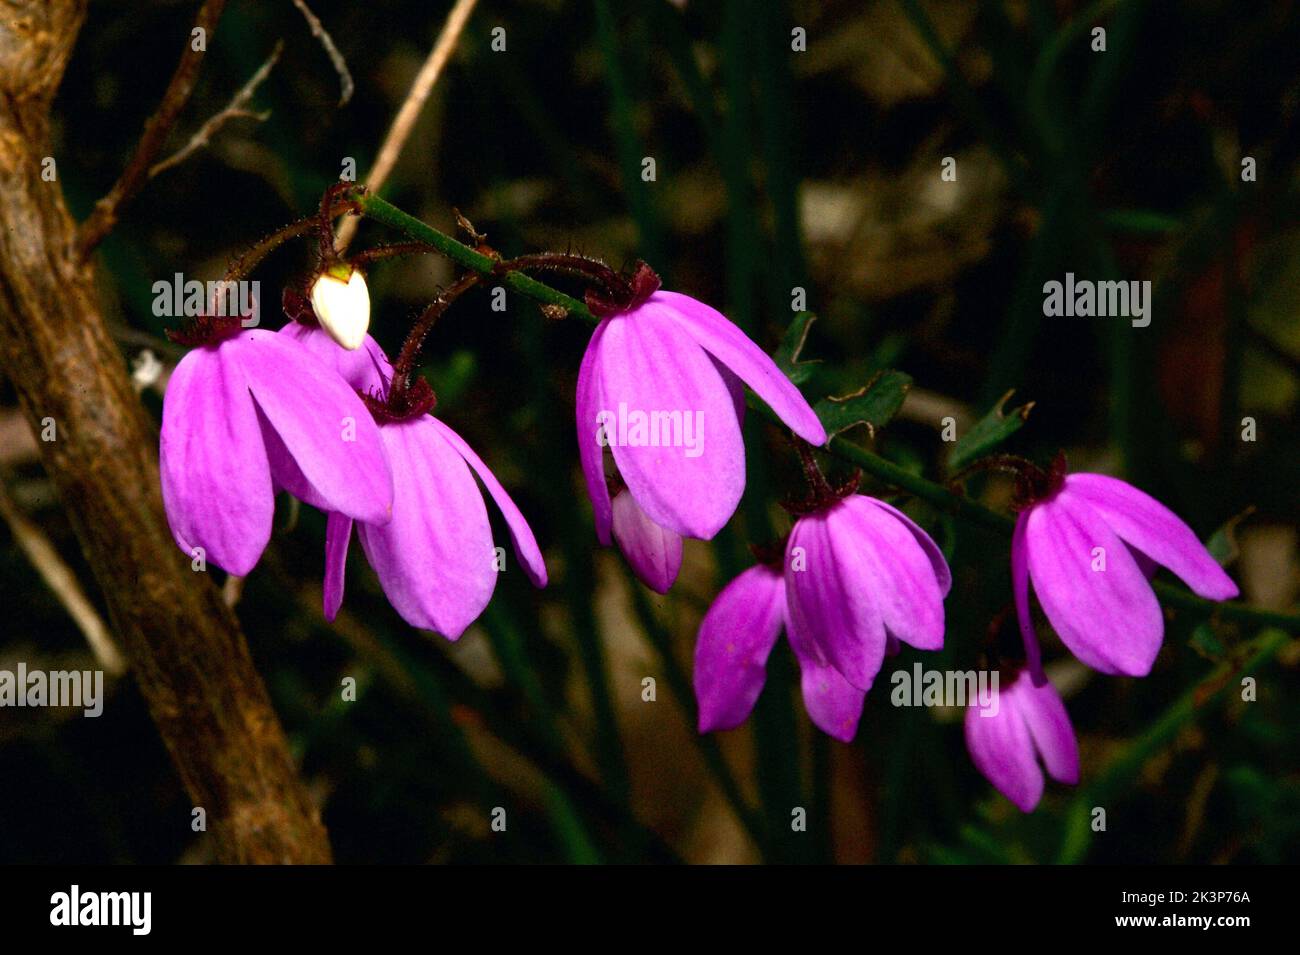 Les fleurs de Susan à yeux noirs (Tetratheca Ciliata) poussent toujours dans les touffes, les fleurs pendent, donc les yeux noirs sont vraiment difficiles à photographier! Banque D'Images